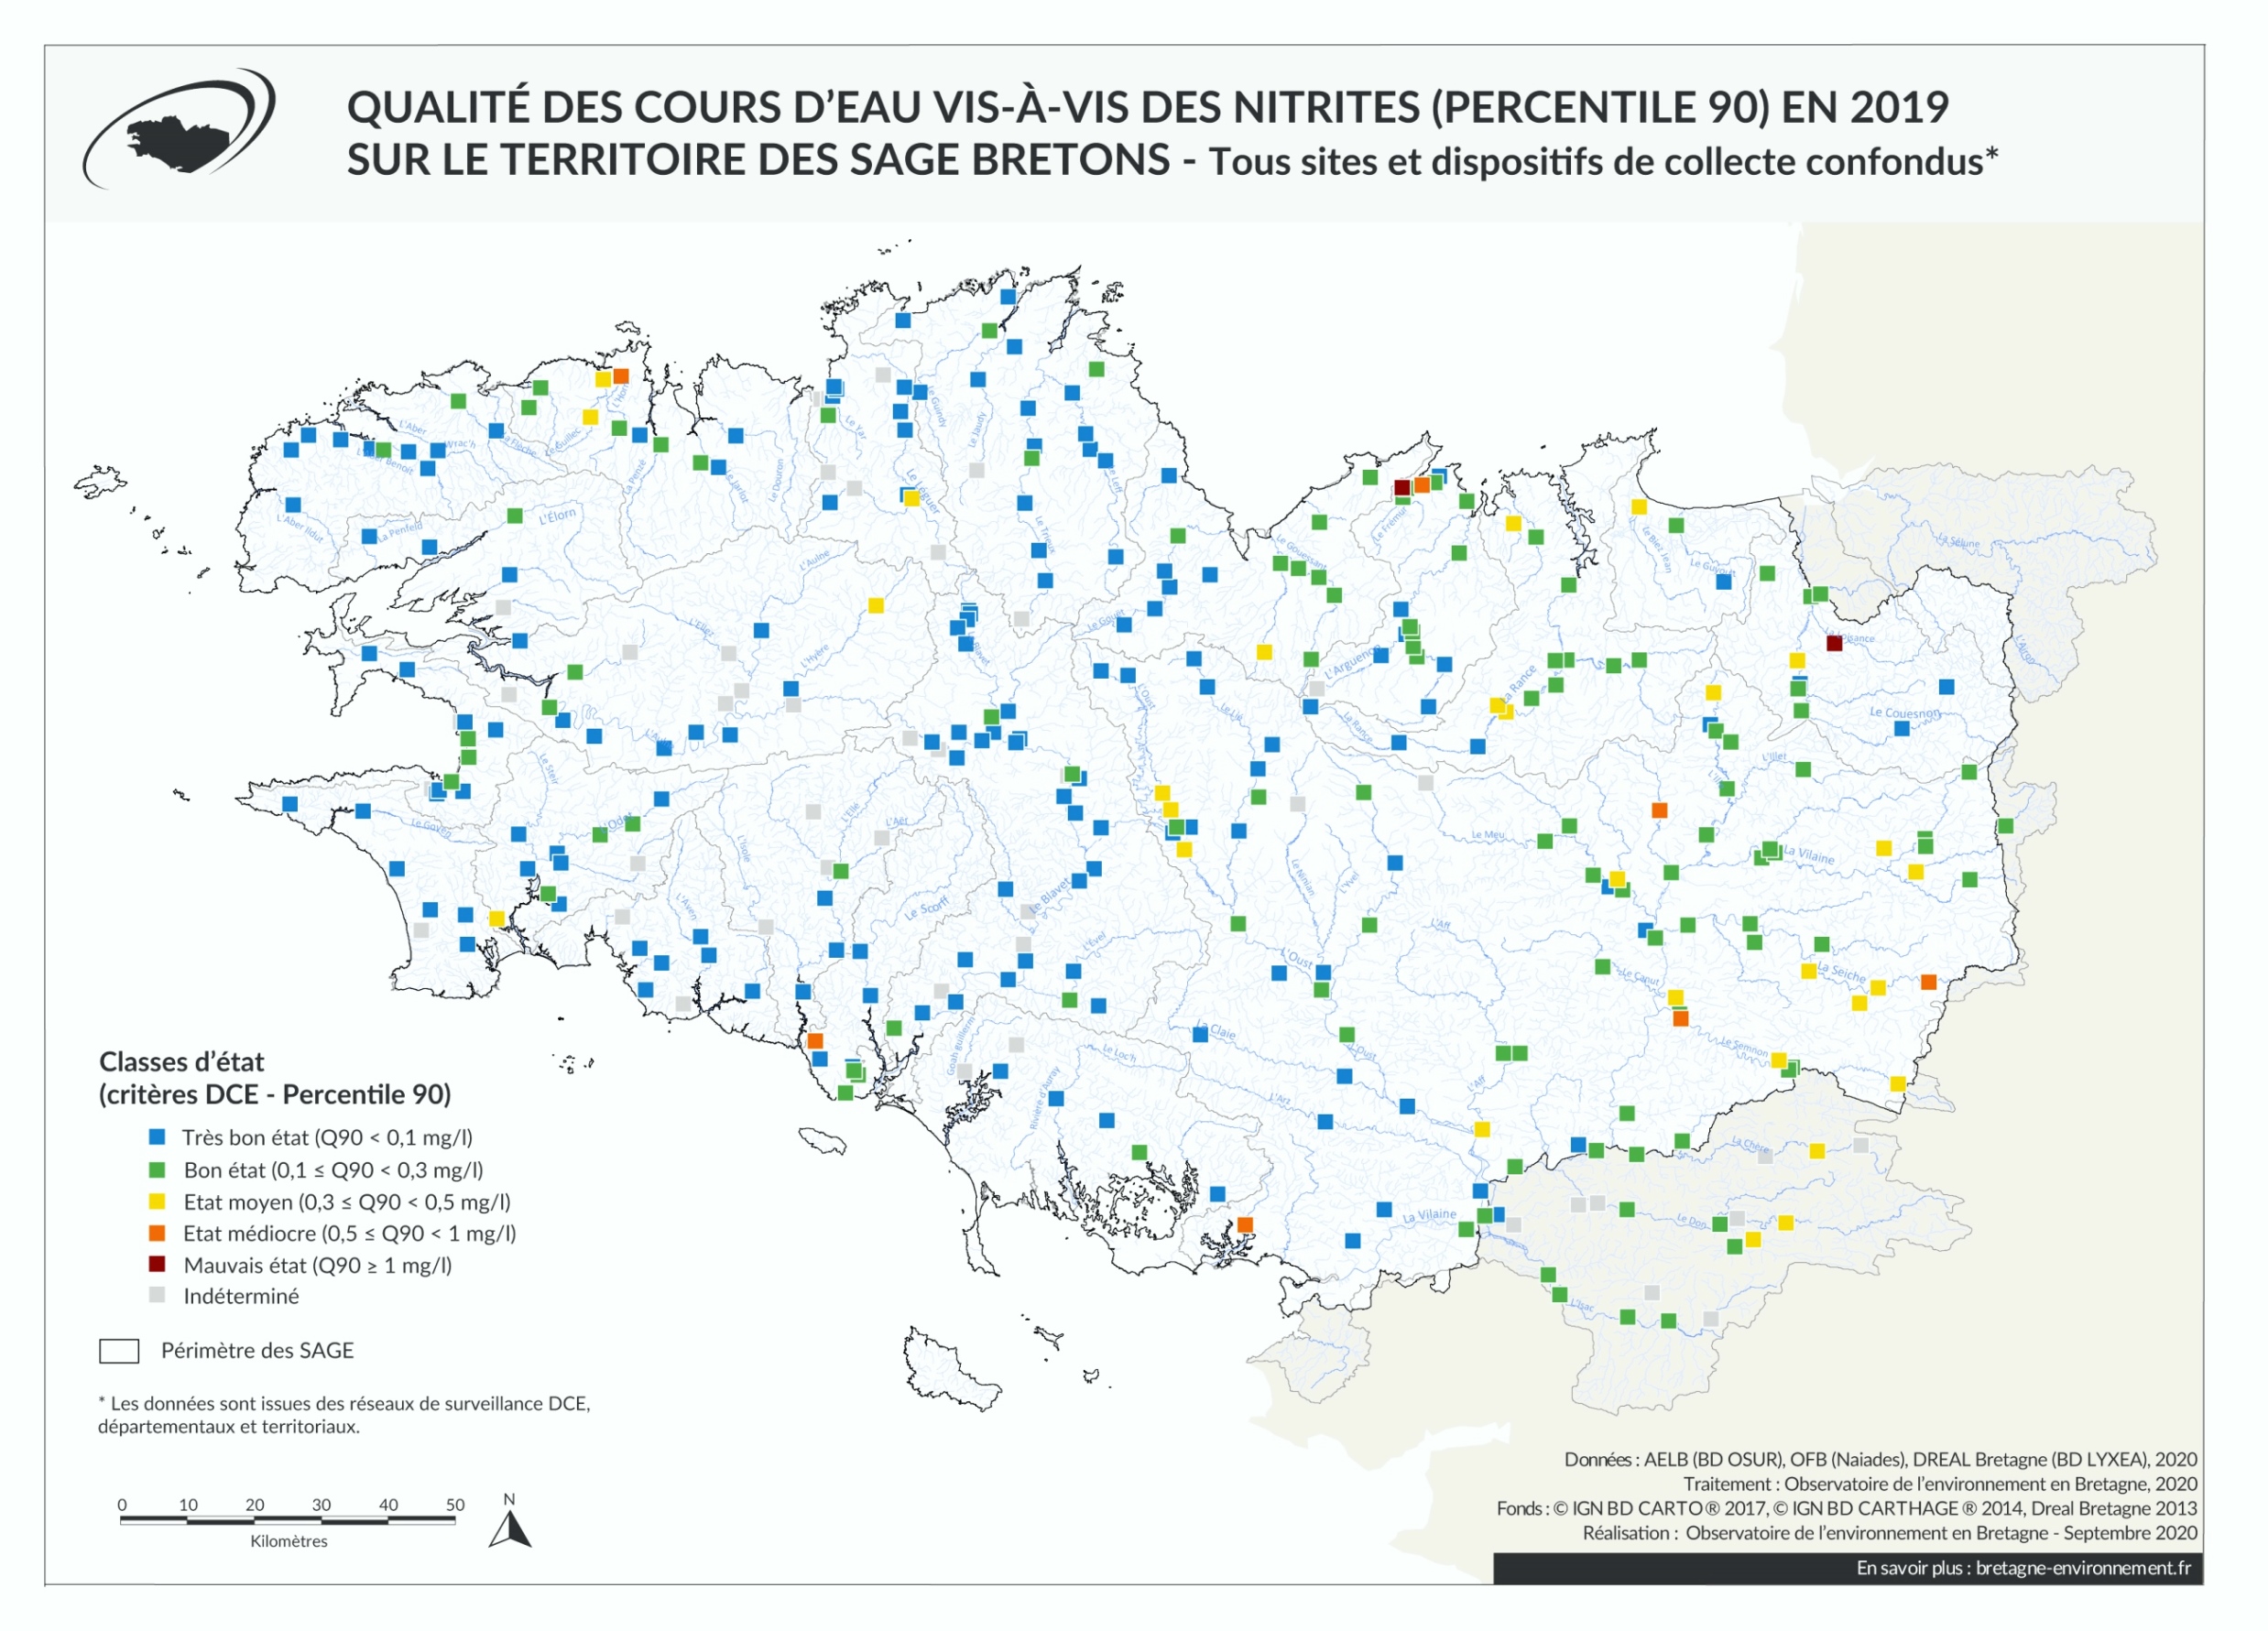 Qualité des cours d'eau bretons vis-à-vis des nitrites (Q90) en 2019